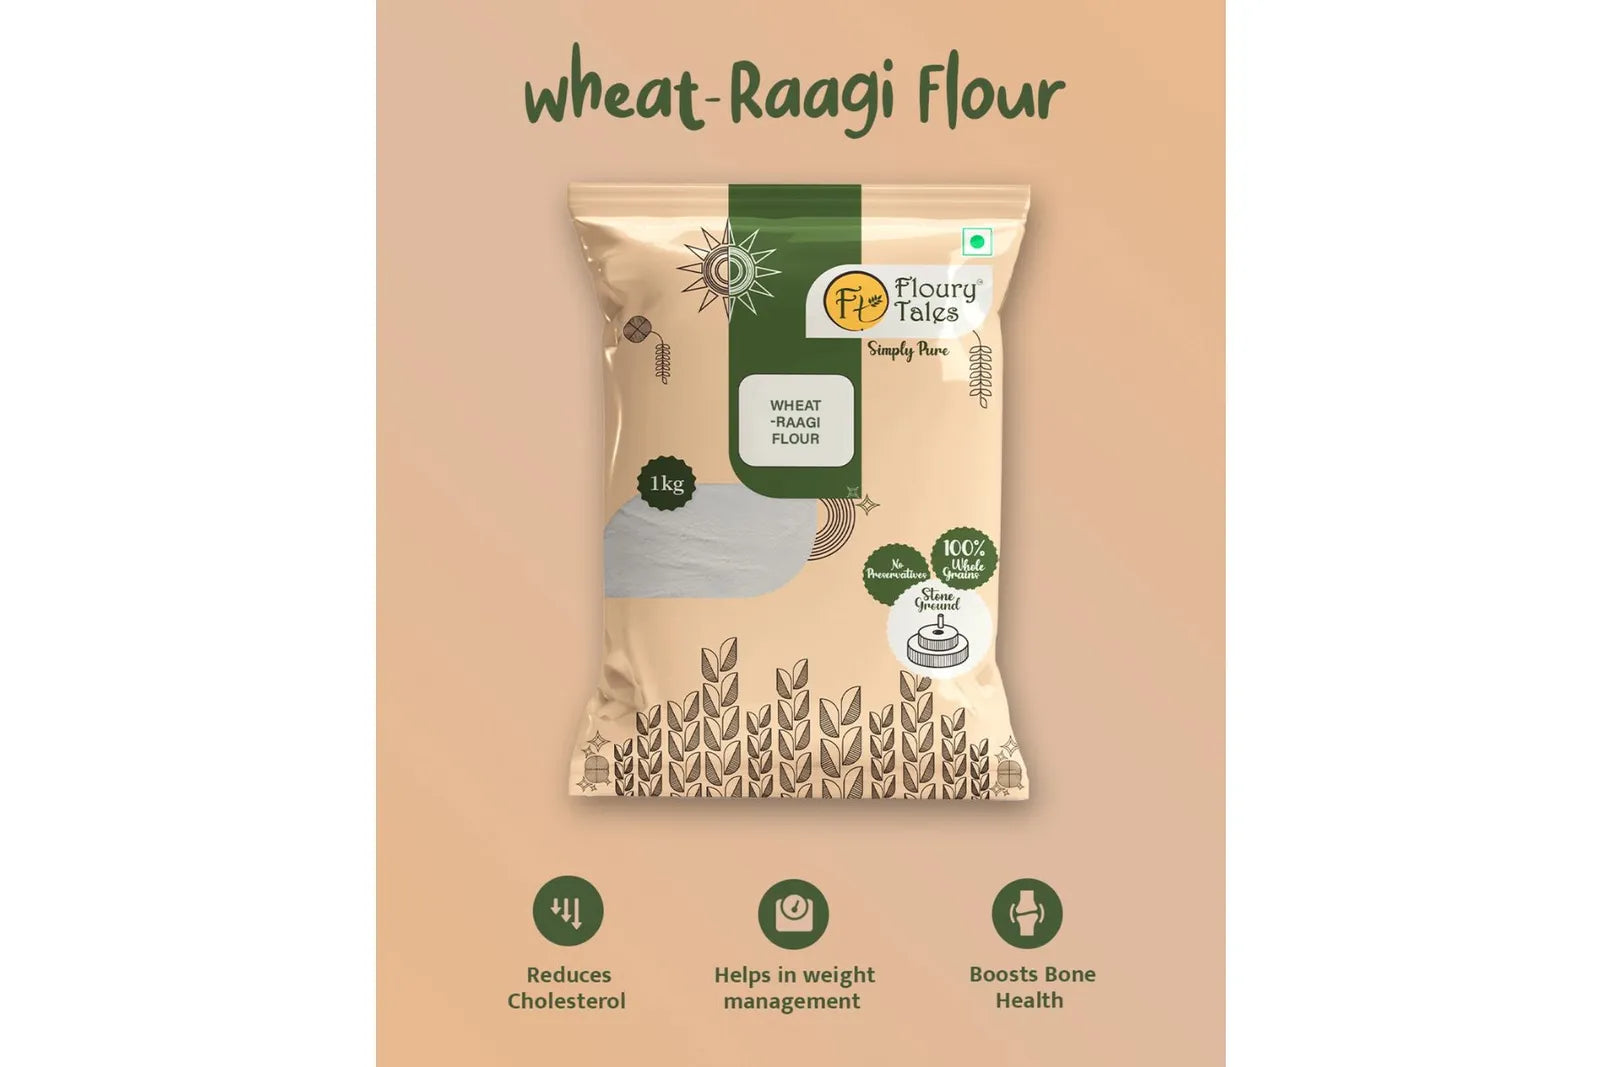 Wheat-Raagi Flour